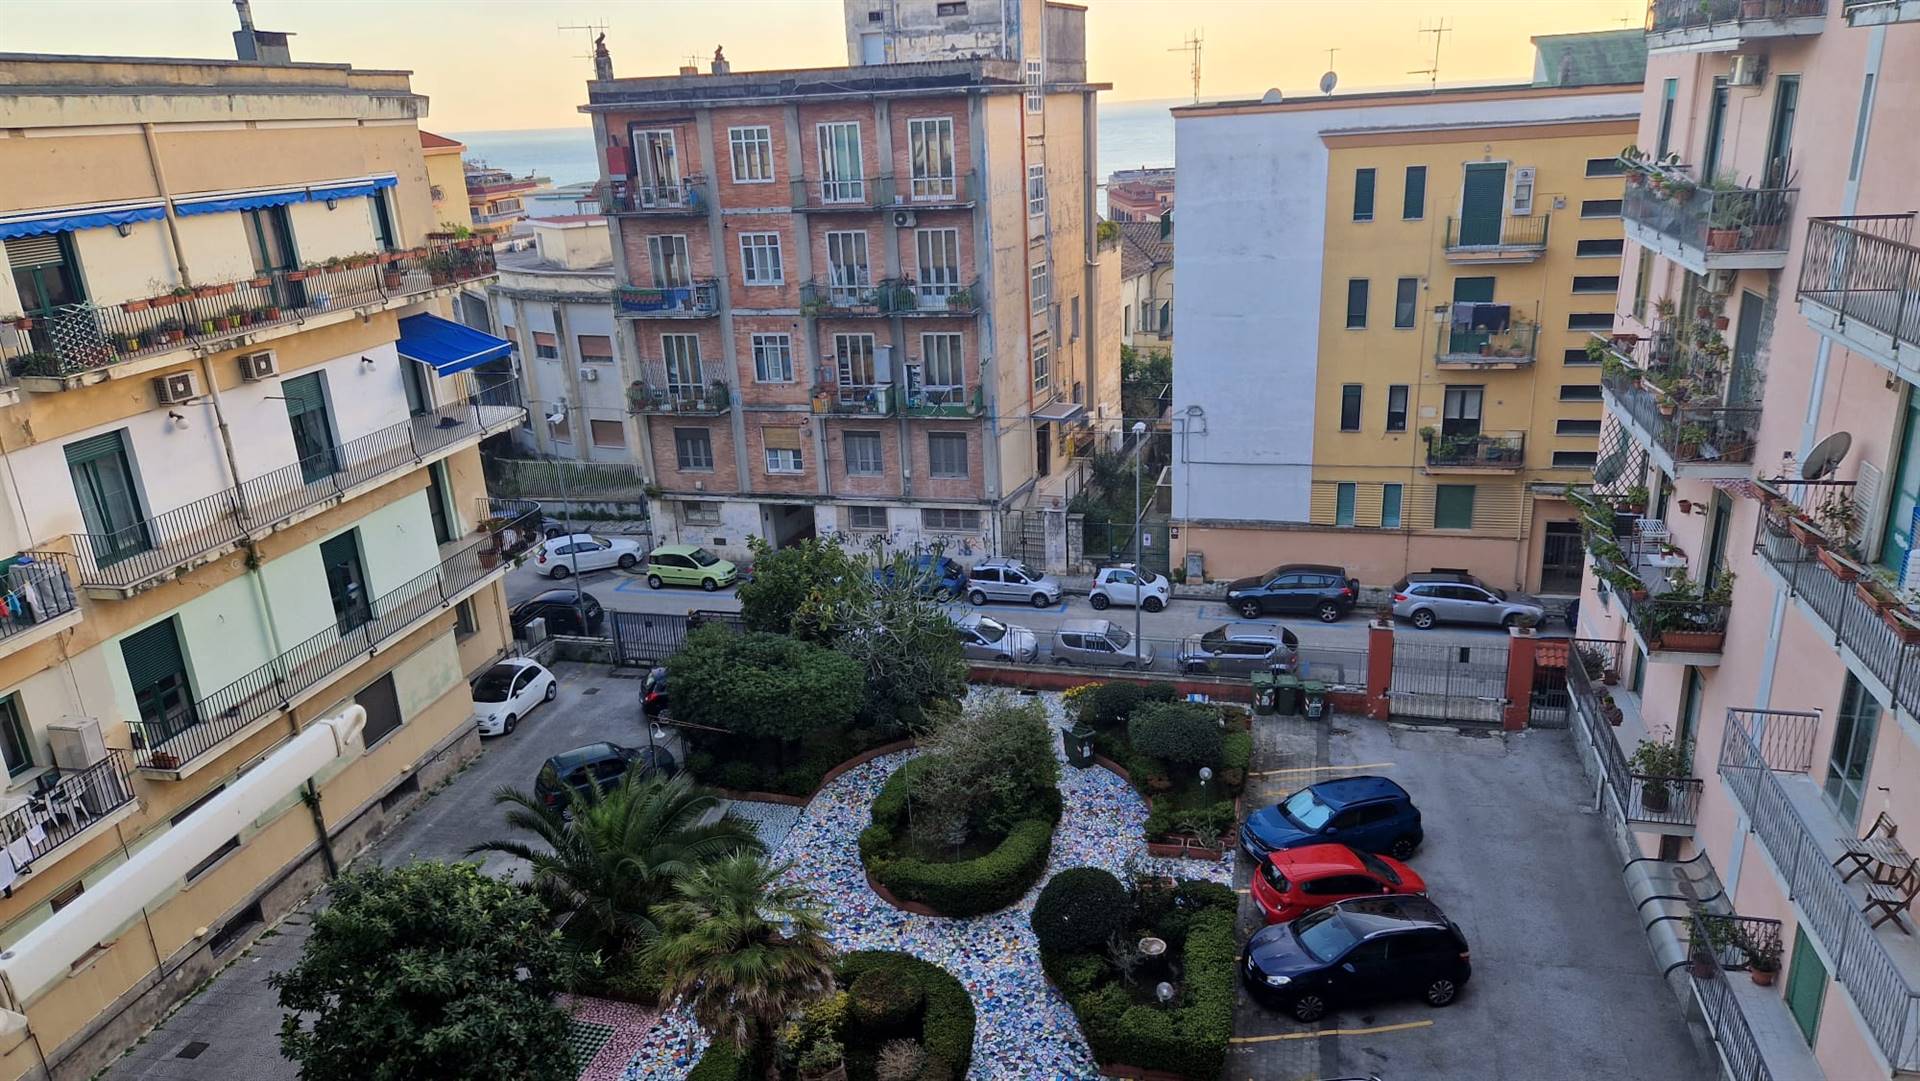 Via Guglielmo da Ravenna, nella zona residenziale ed esclusiva del Rione Mutilati Proponiamo la locazione di ampio 5 vani vista mare con posto auto!